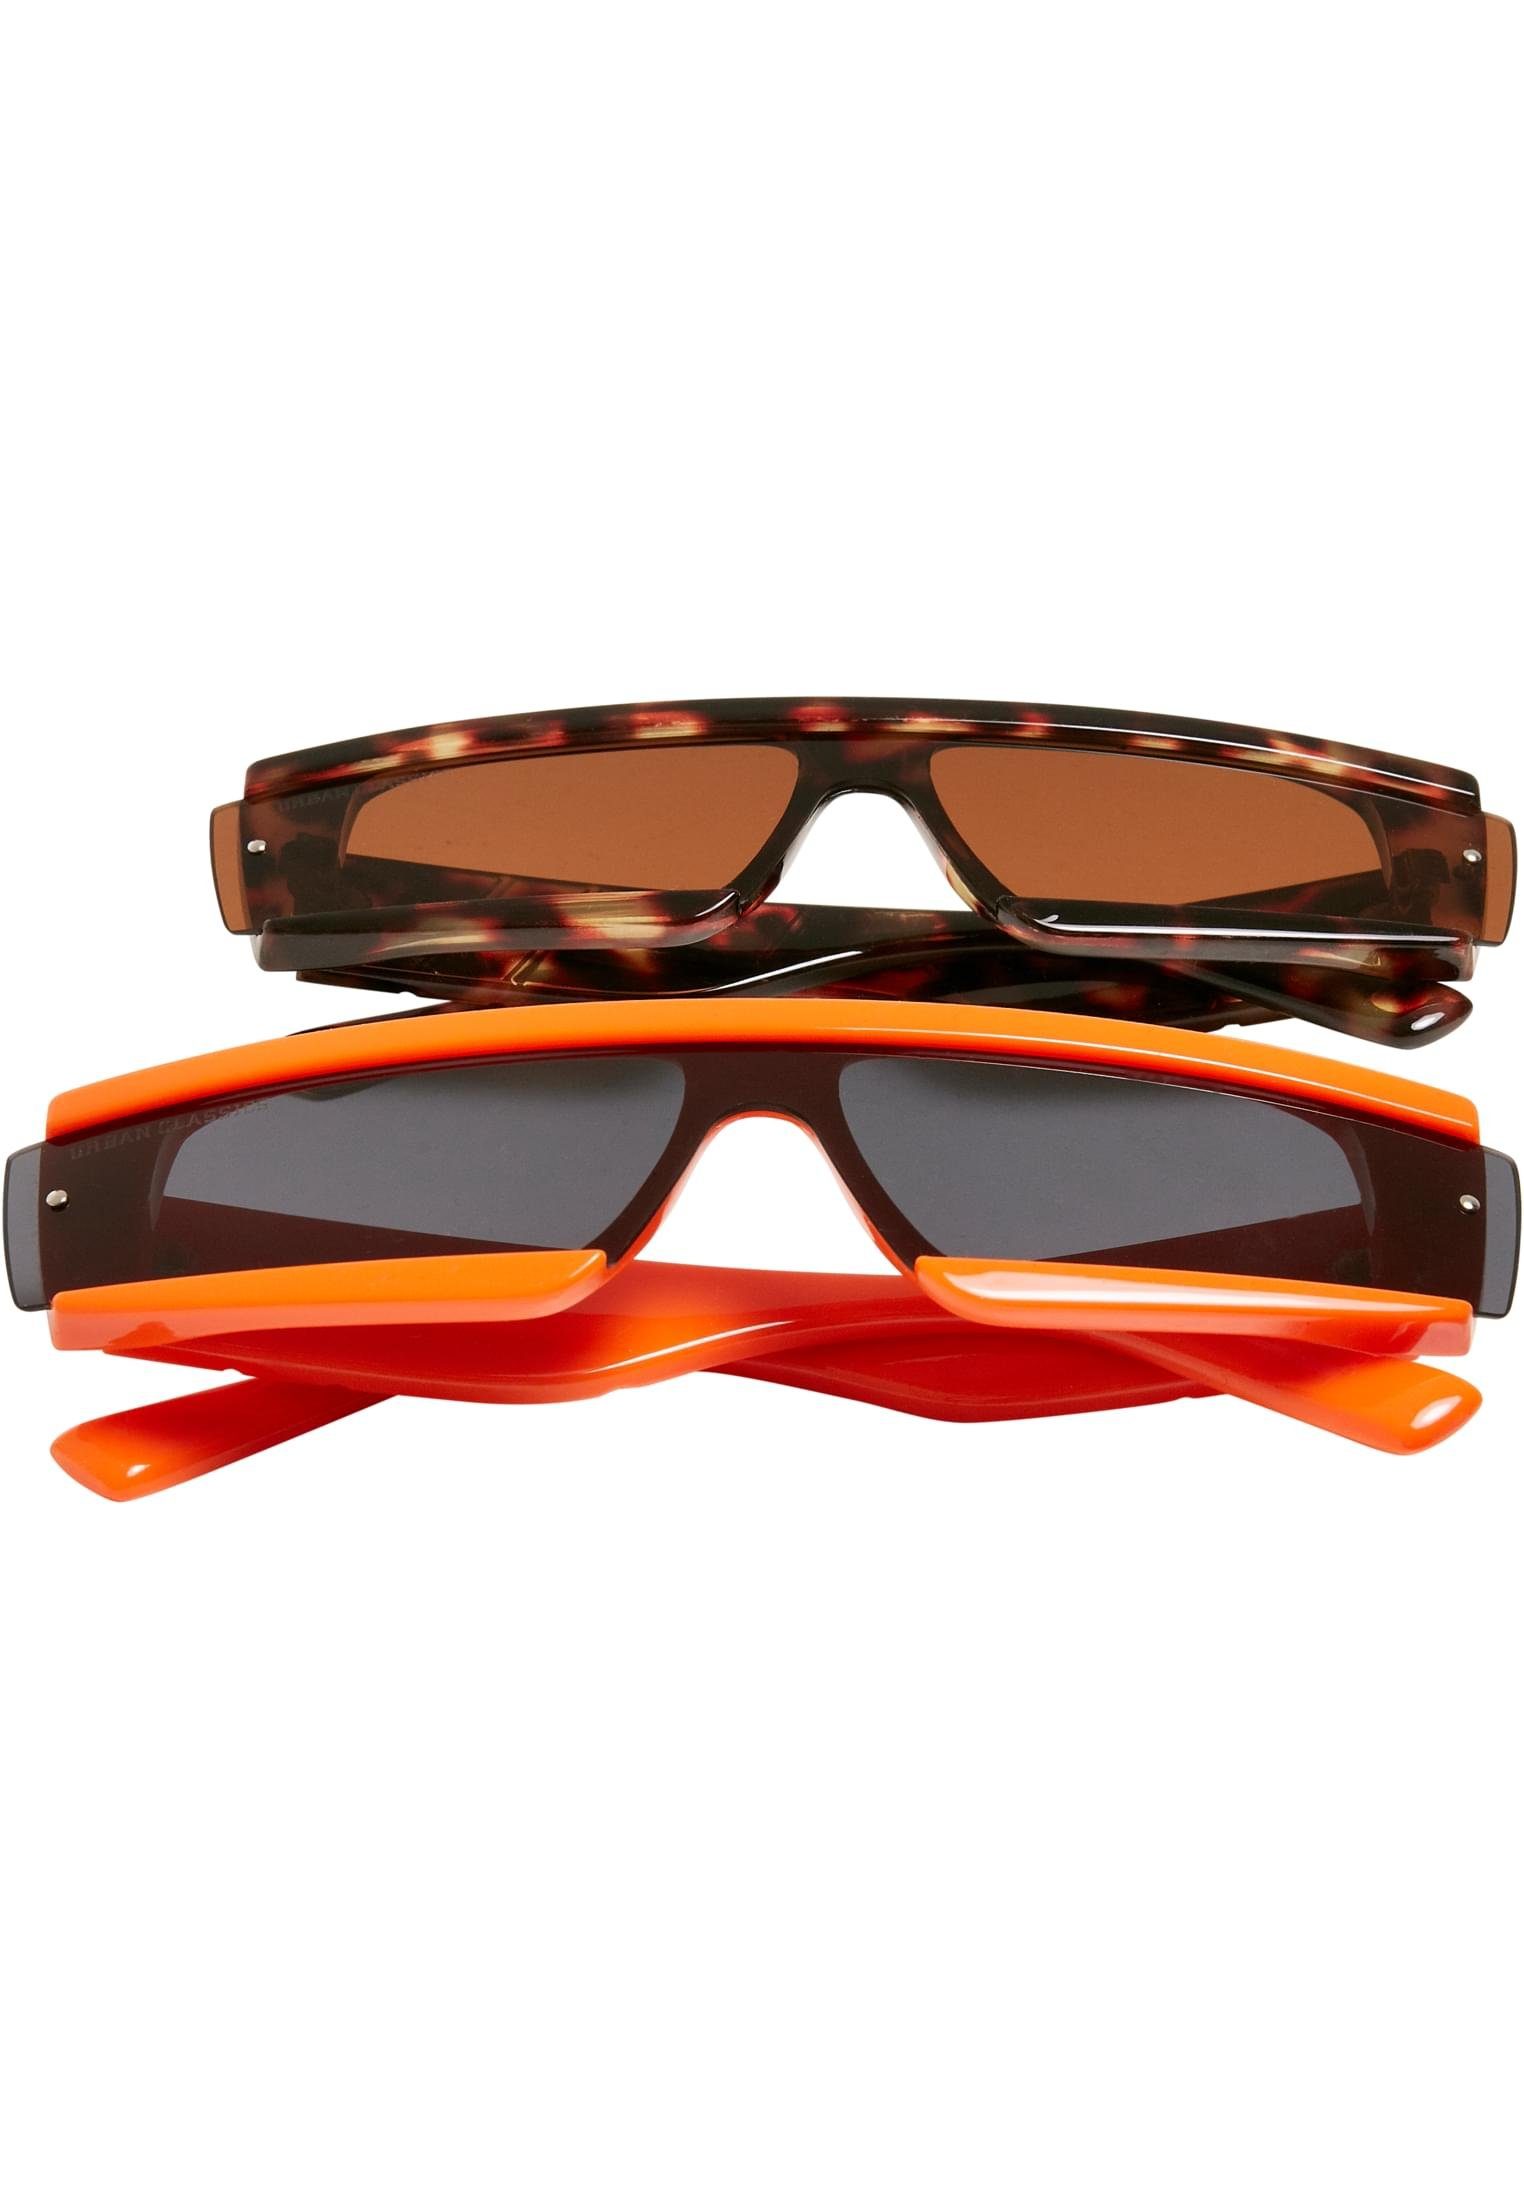 URBAN CLASSICS Sonnenbrille Unisex Sunglasses Alabama 2-Pack orange/brown